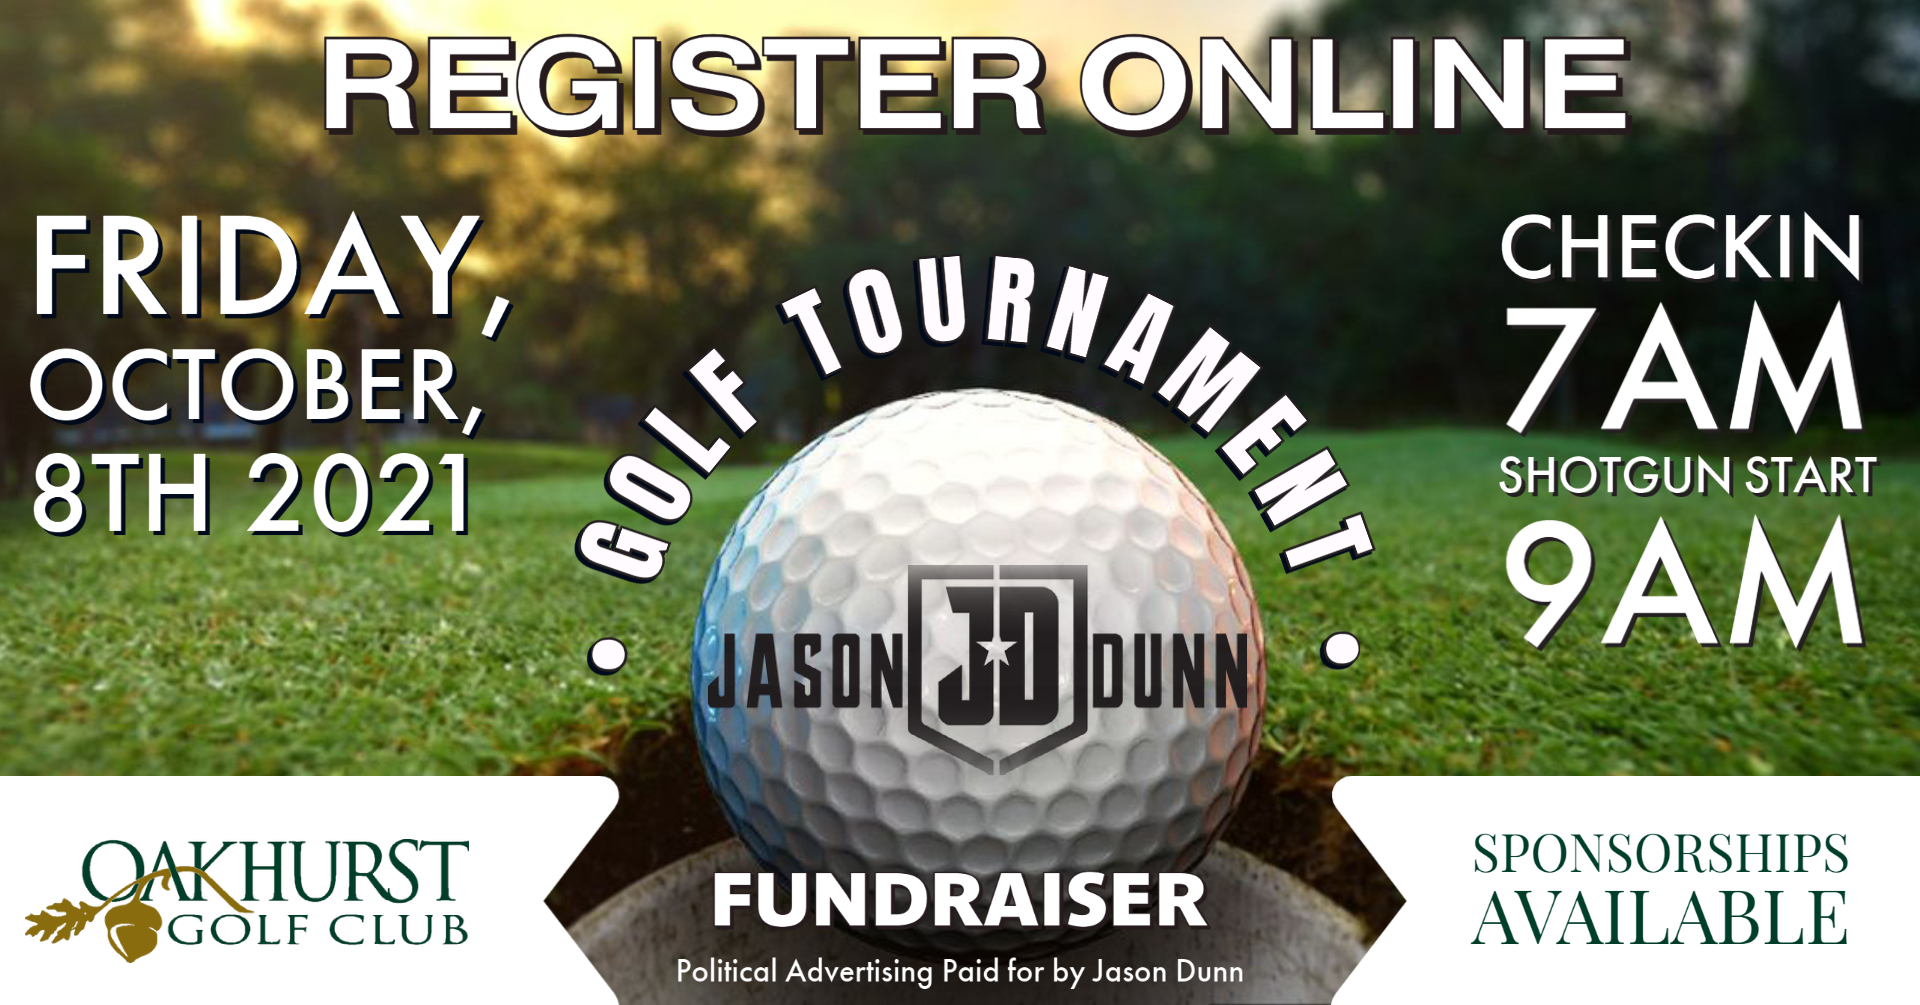 New Date for Jason Dunn Golf Tournament Fundraiser